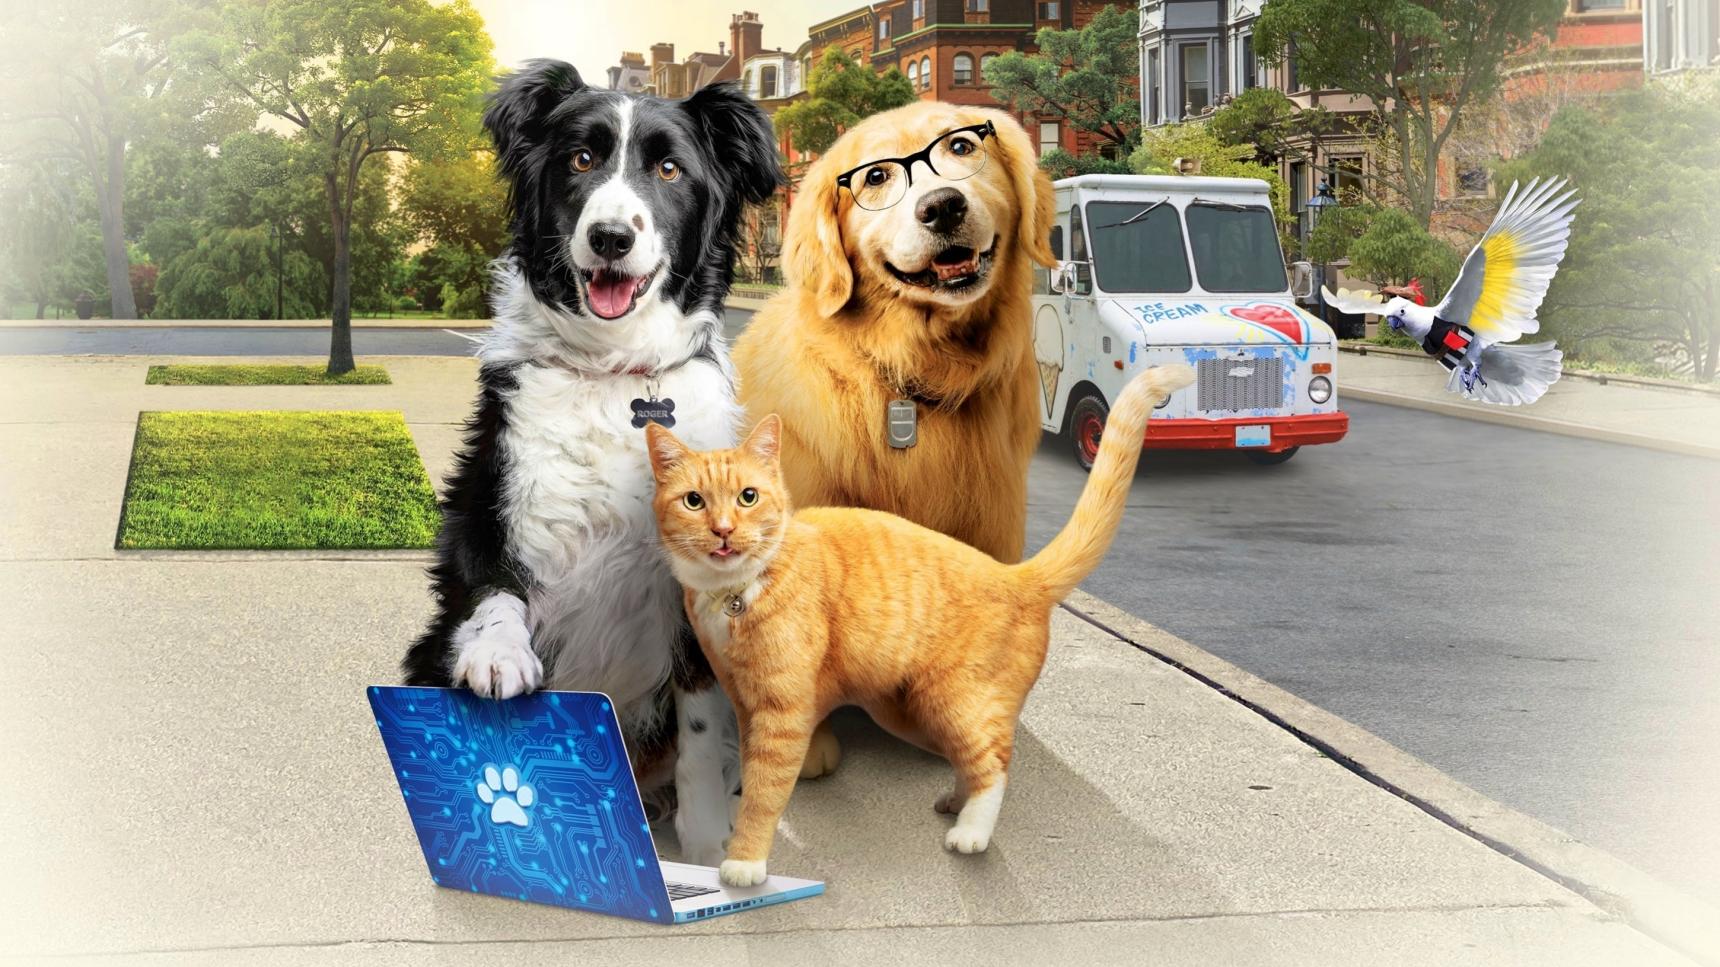 categorias de Como perros y gatos: La patrulla unida